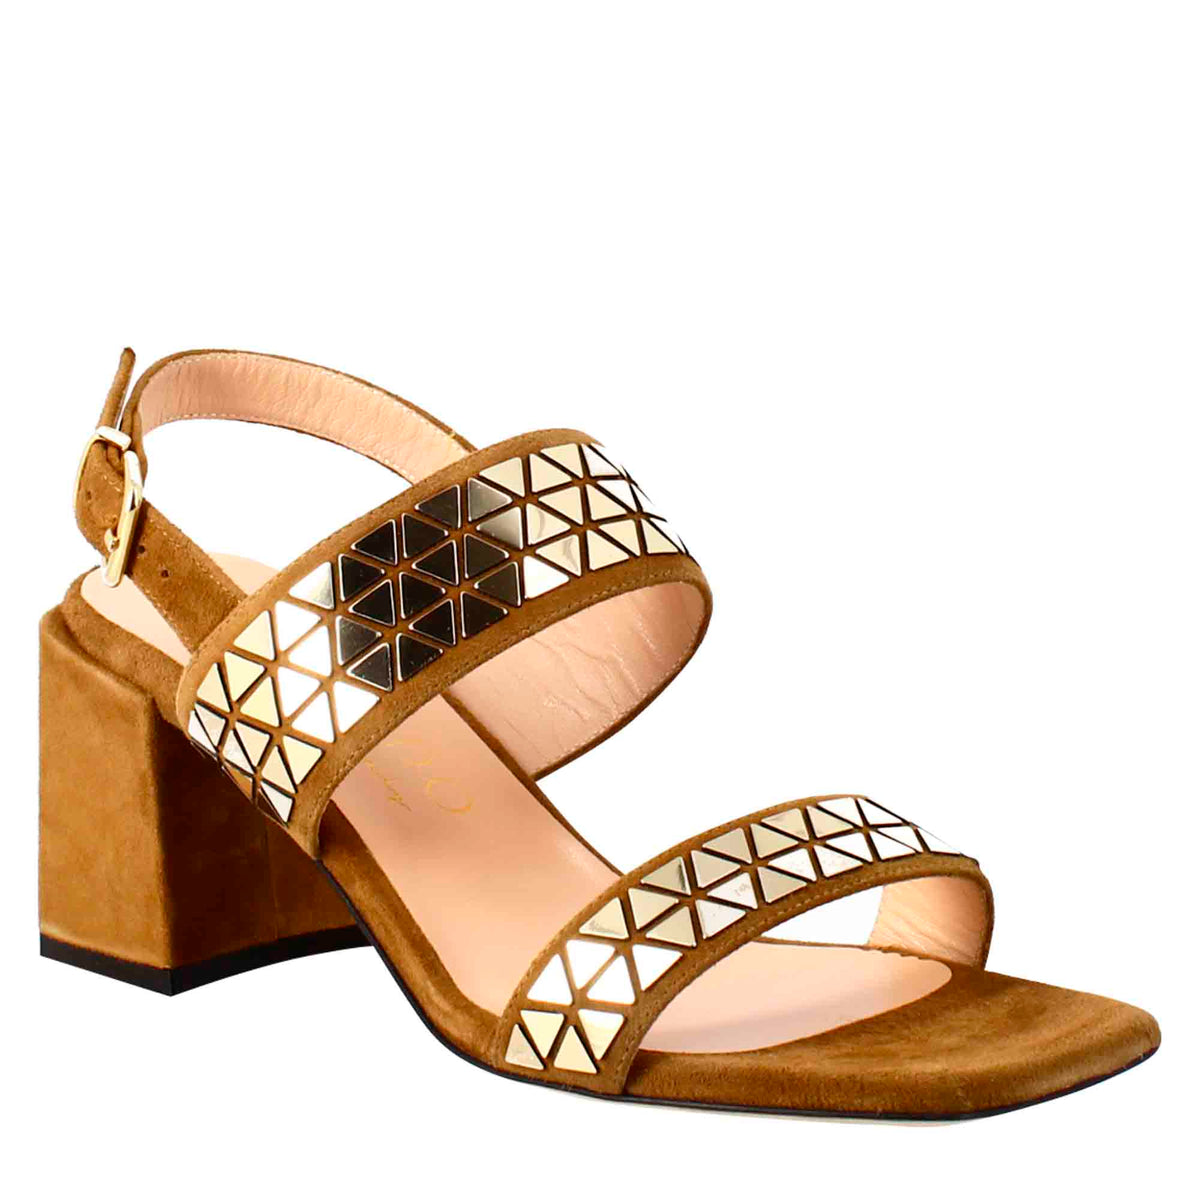 Women's Golden Flat Slide Sandals, Fashion Square Open Toe Slip On